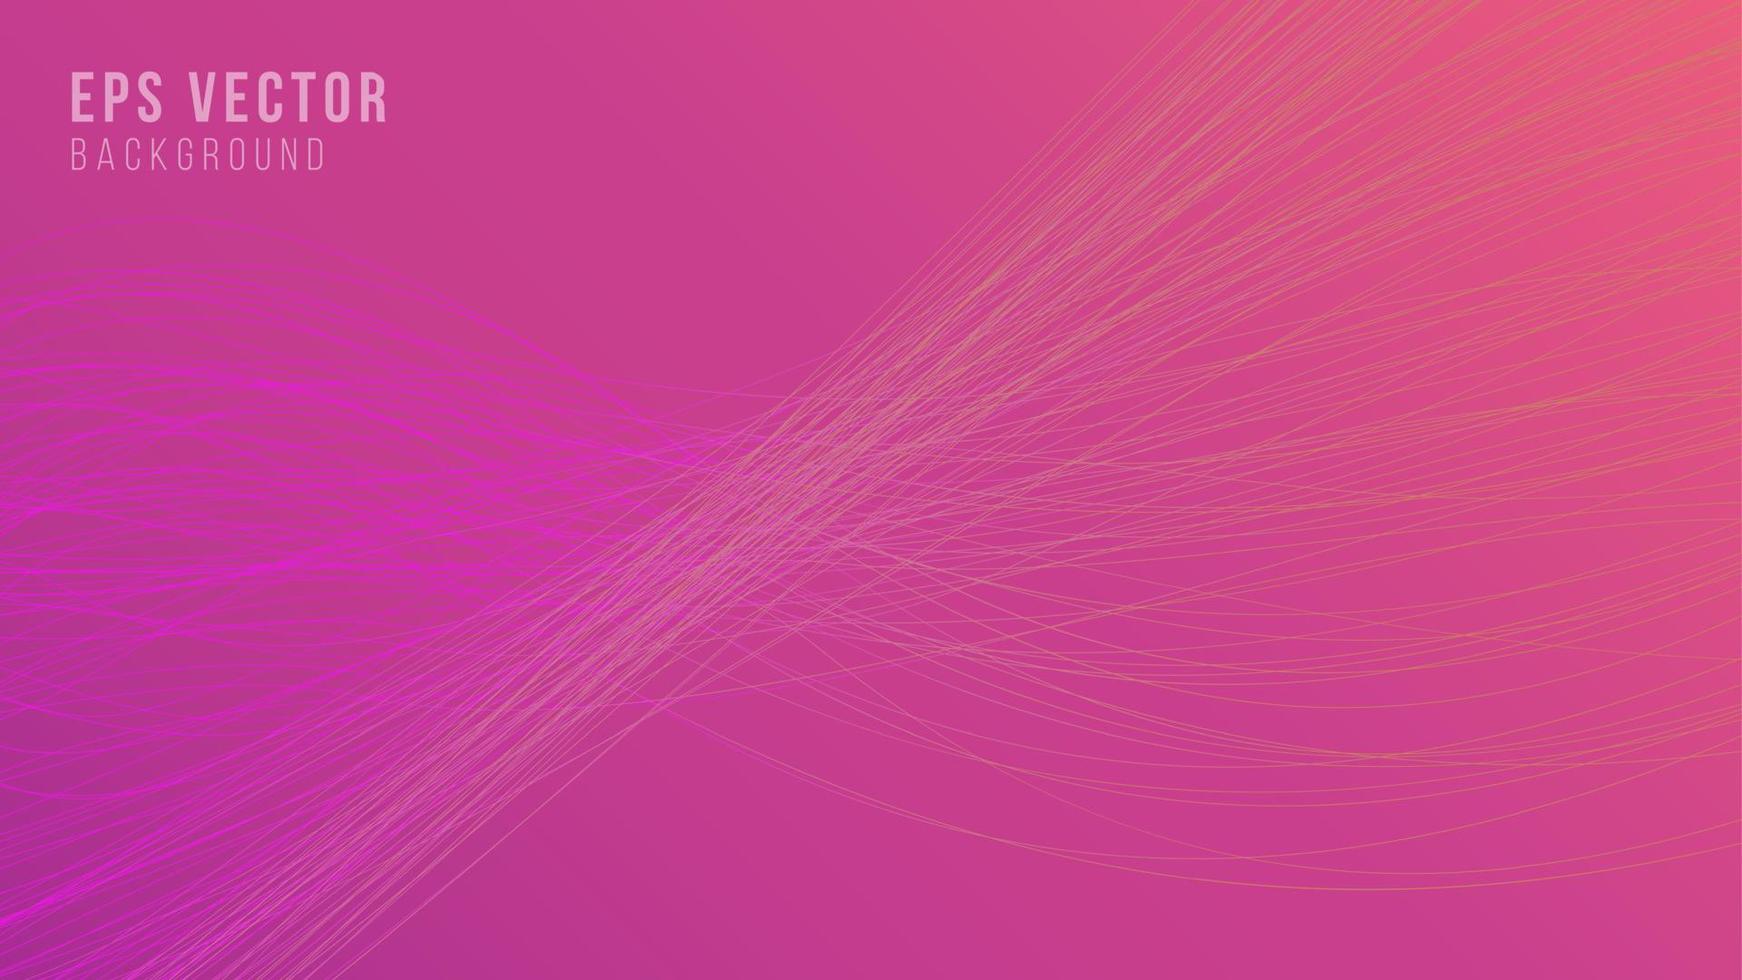 linha abstrata rosa ondas fundo com estilo gradiente de linhas onduladas. pode usar para cartaz, banner comercial, folheto, anúncio, folheto, catálogo, web, site, site, apresentação, capa de livro, folheto vetor